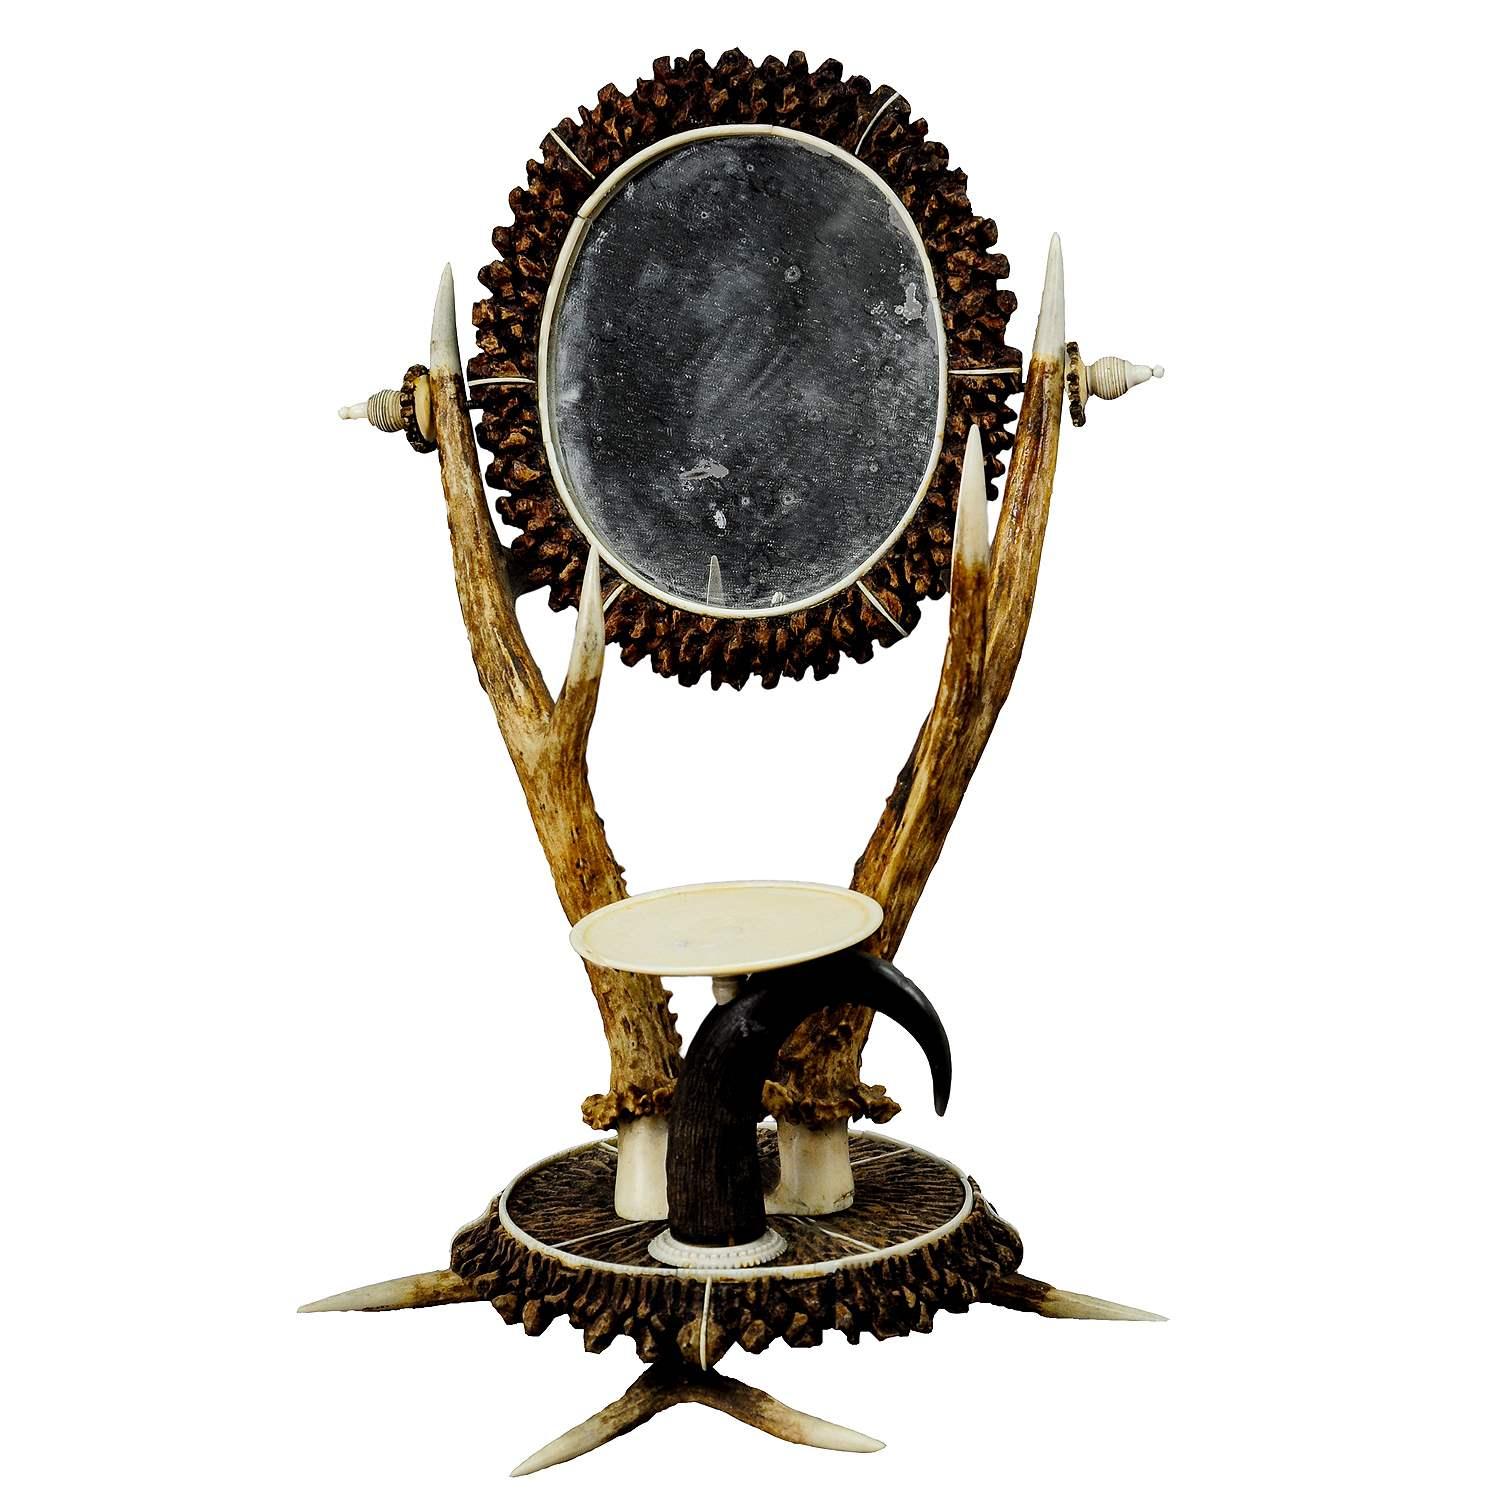 Ensemble de coiffeuses en bois de cervidé avec miroir, vers 1840

Merveilleuse vanité en bois de cerf avec miroir et plateau à anneaux. Il était en bois, plaqué de morceaux de corne, de bois de cerf et d'une corne de chamois. Exécuté vers 1840.